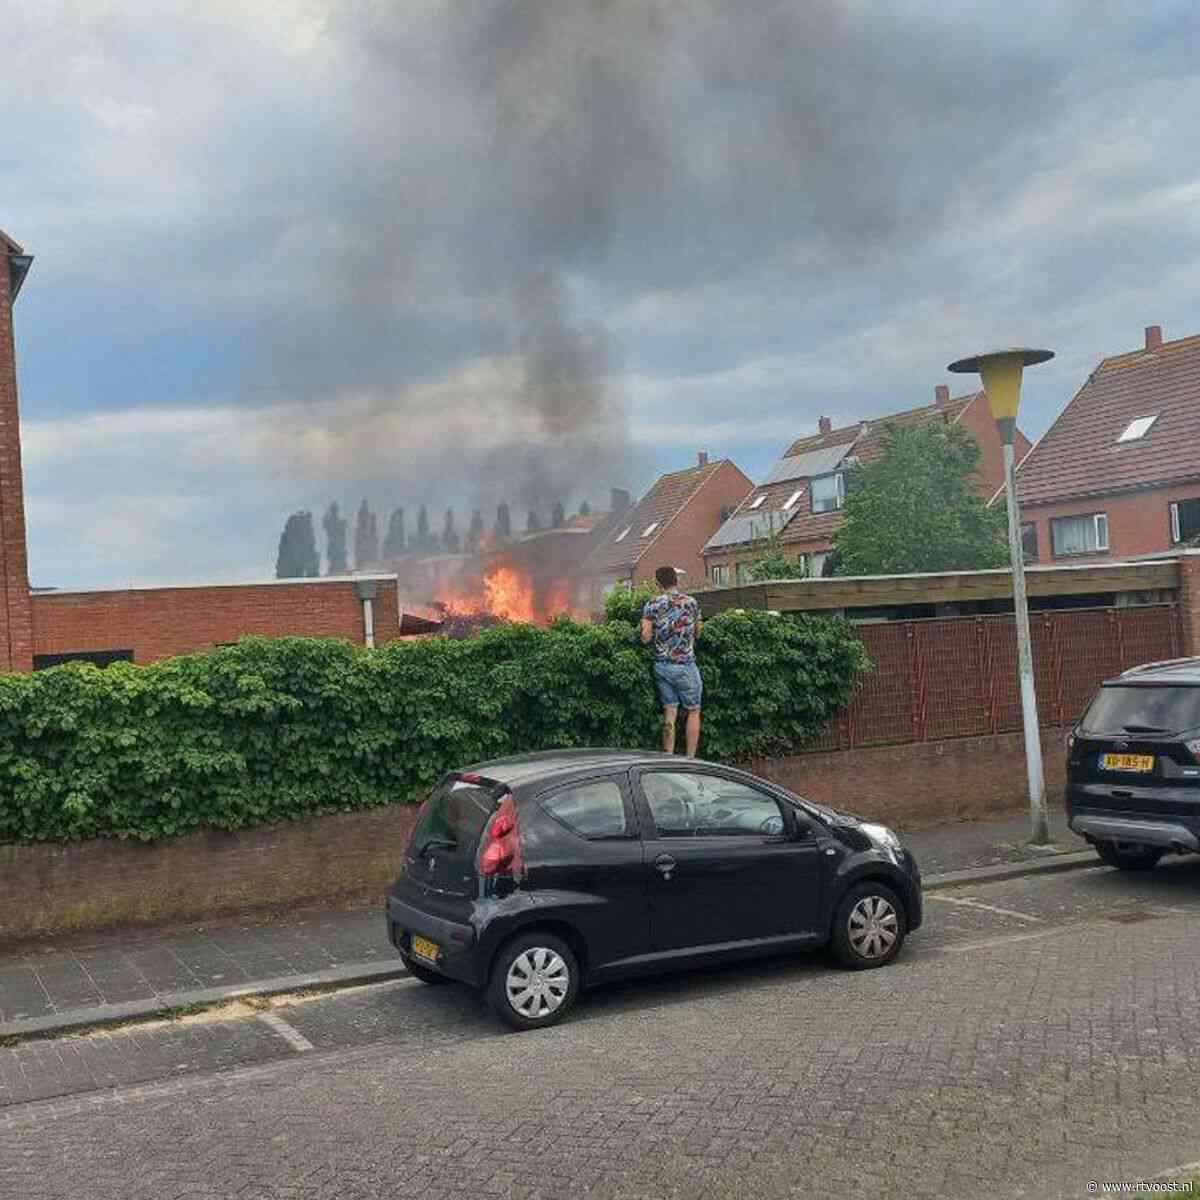 112 Nieuws:  Veel schade na brand in achtertuin bij woning in Zwolle